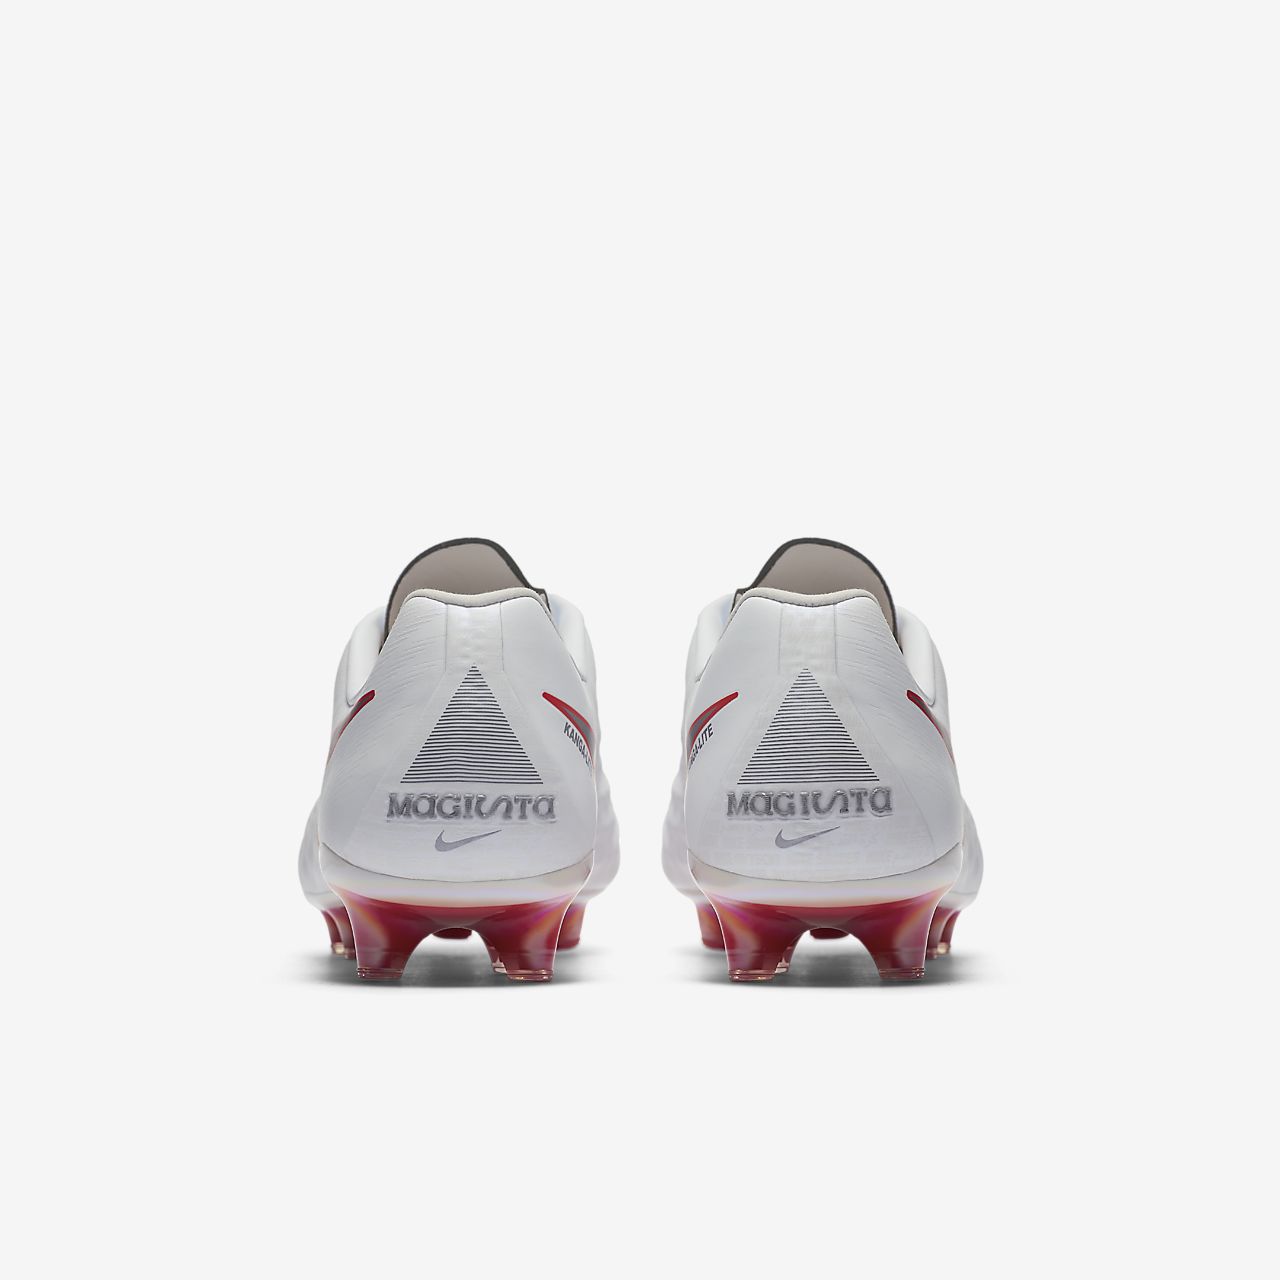 Nike MagistaX Proximo II TF Junior 843956 009 Nike